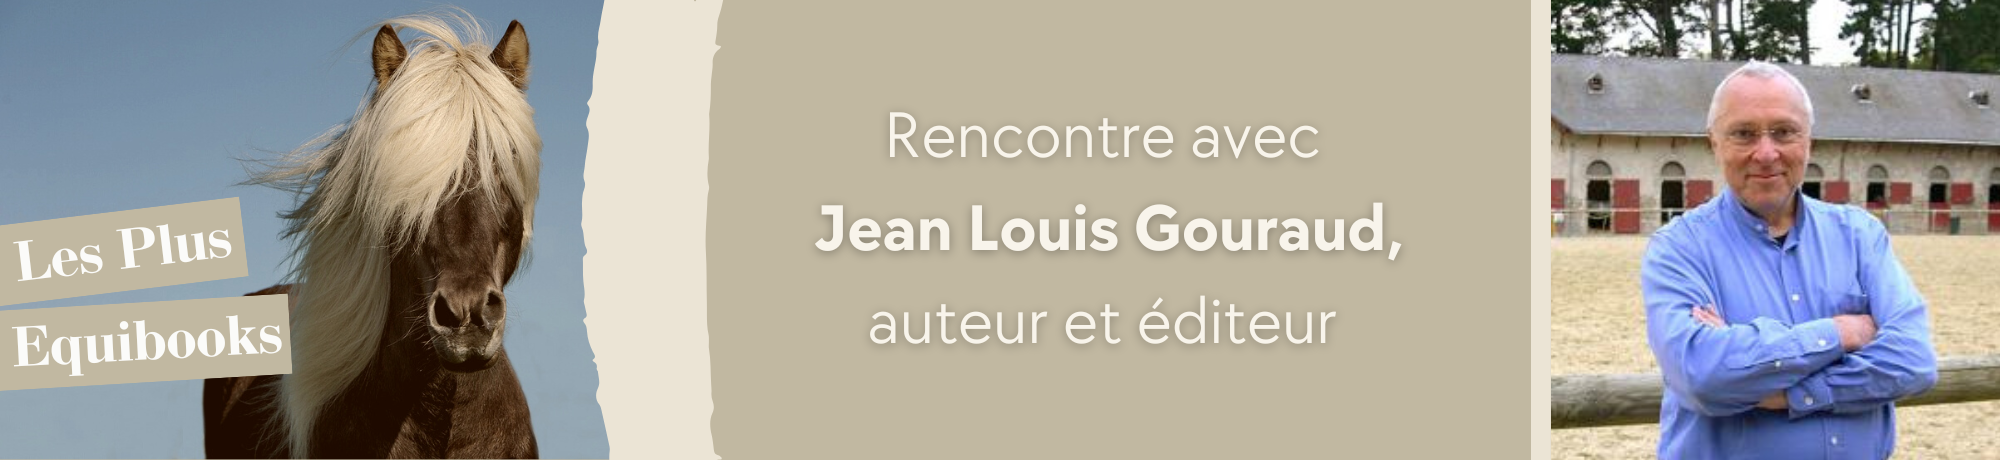 Jean Louis Gouraud